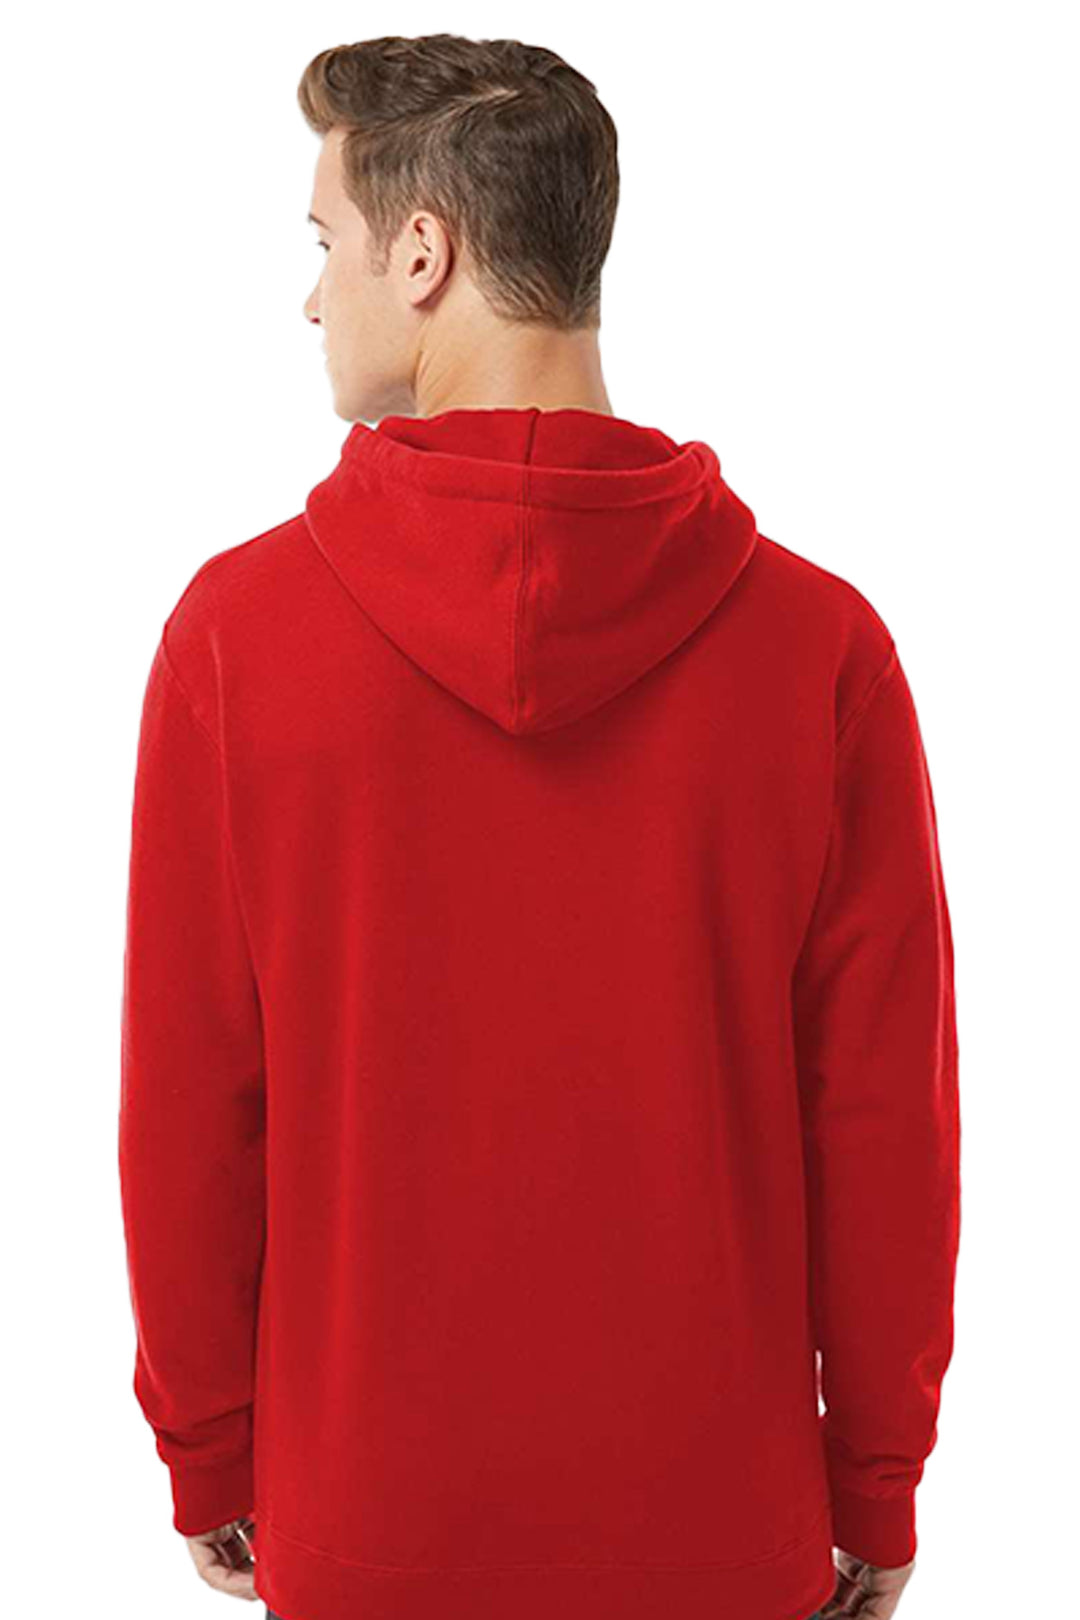 Heavyweight Hooded Sweatshirt